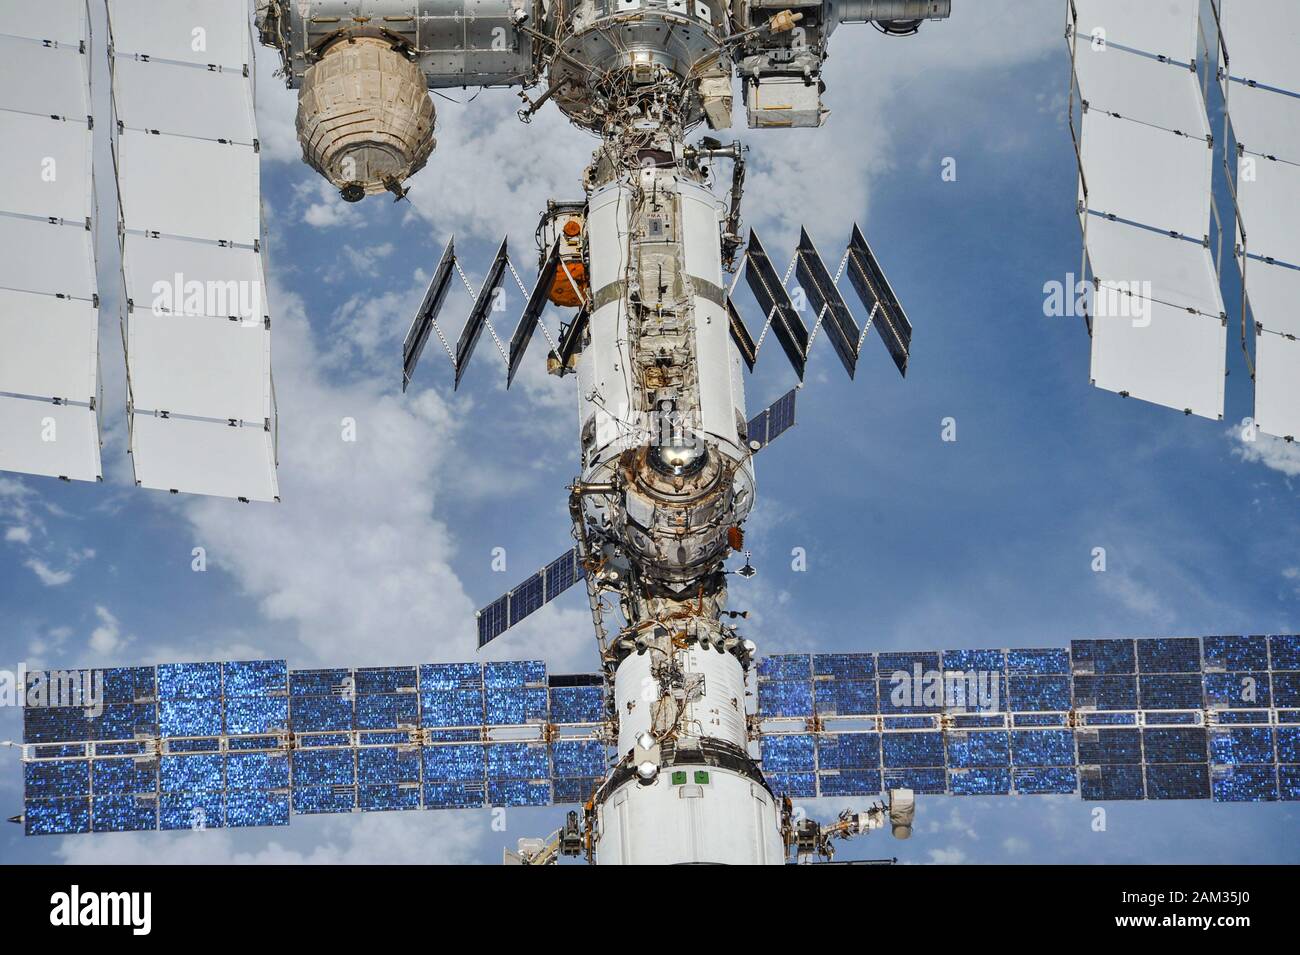 La Estación Espacial Internacional fotografiada por miembros de la tripulación de la expedición 56 de una nave espacial Soyuz después de desacoplarse el 4 de octubre de 2018 Foto de stock